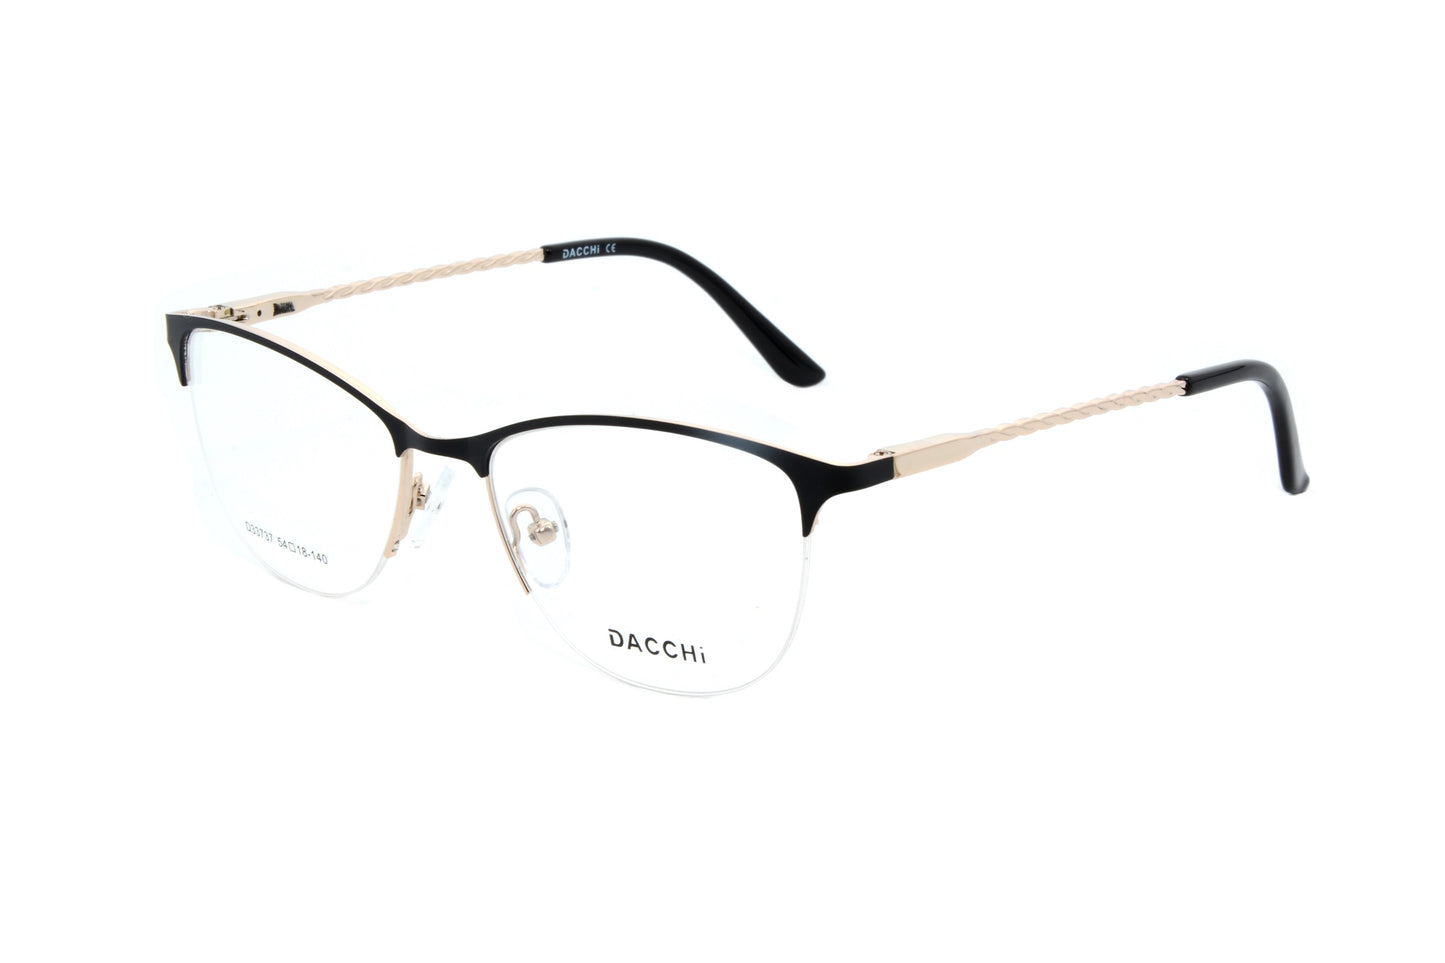 Dacchi eyewear D33737 C1